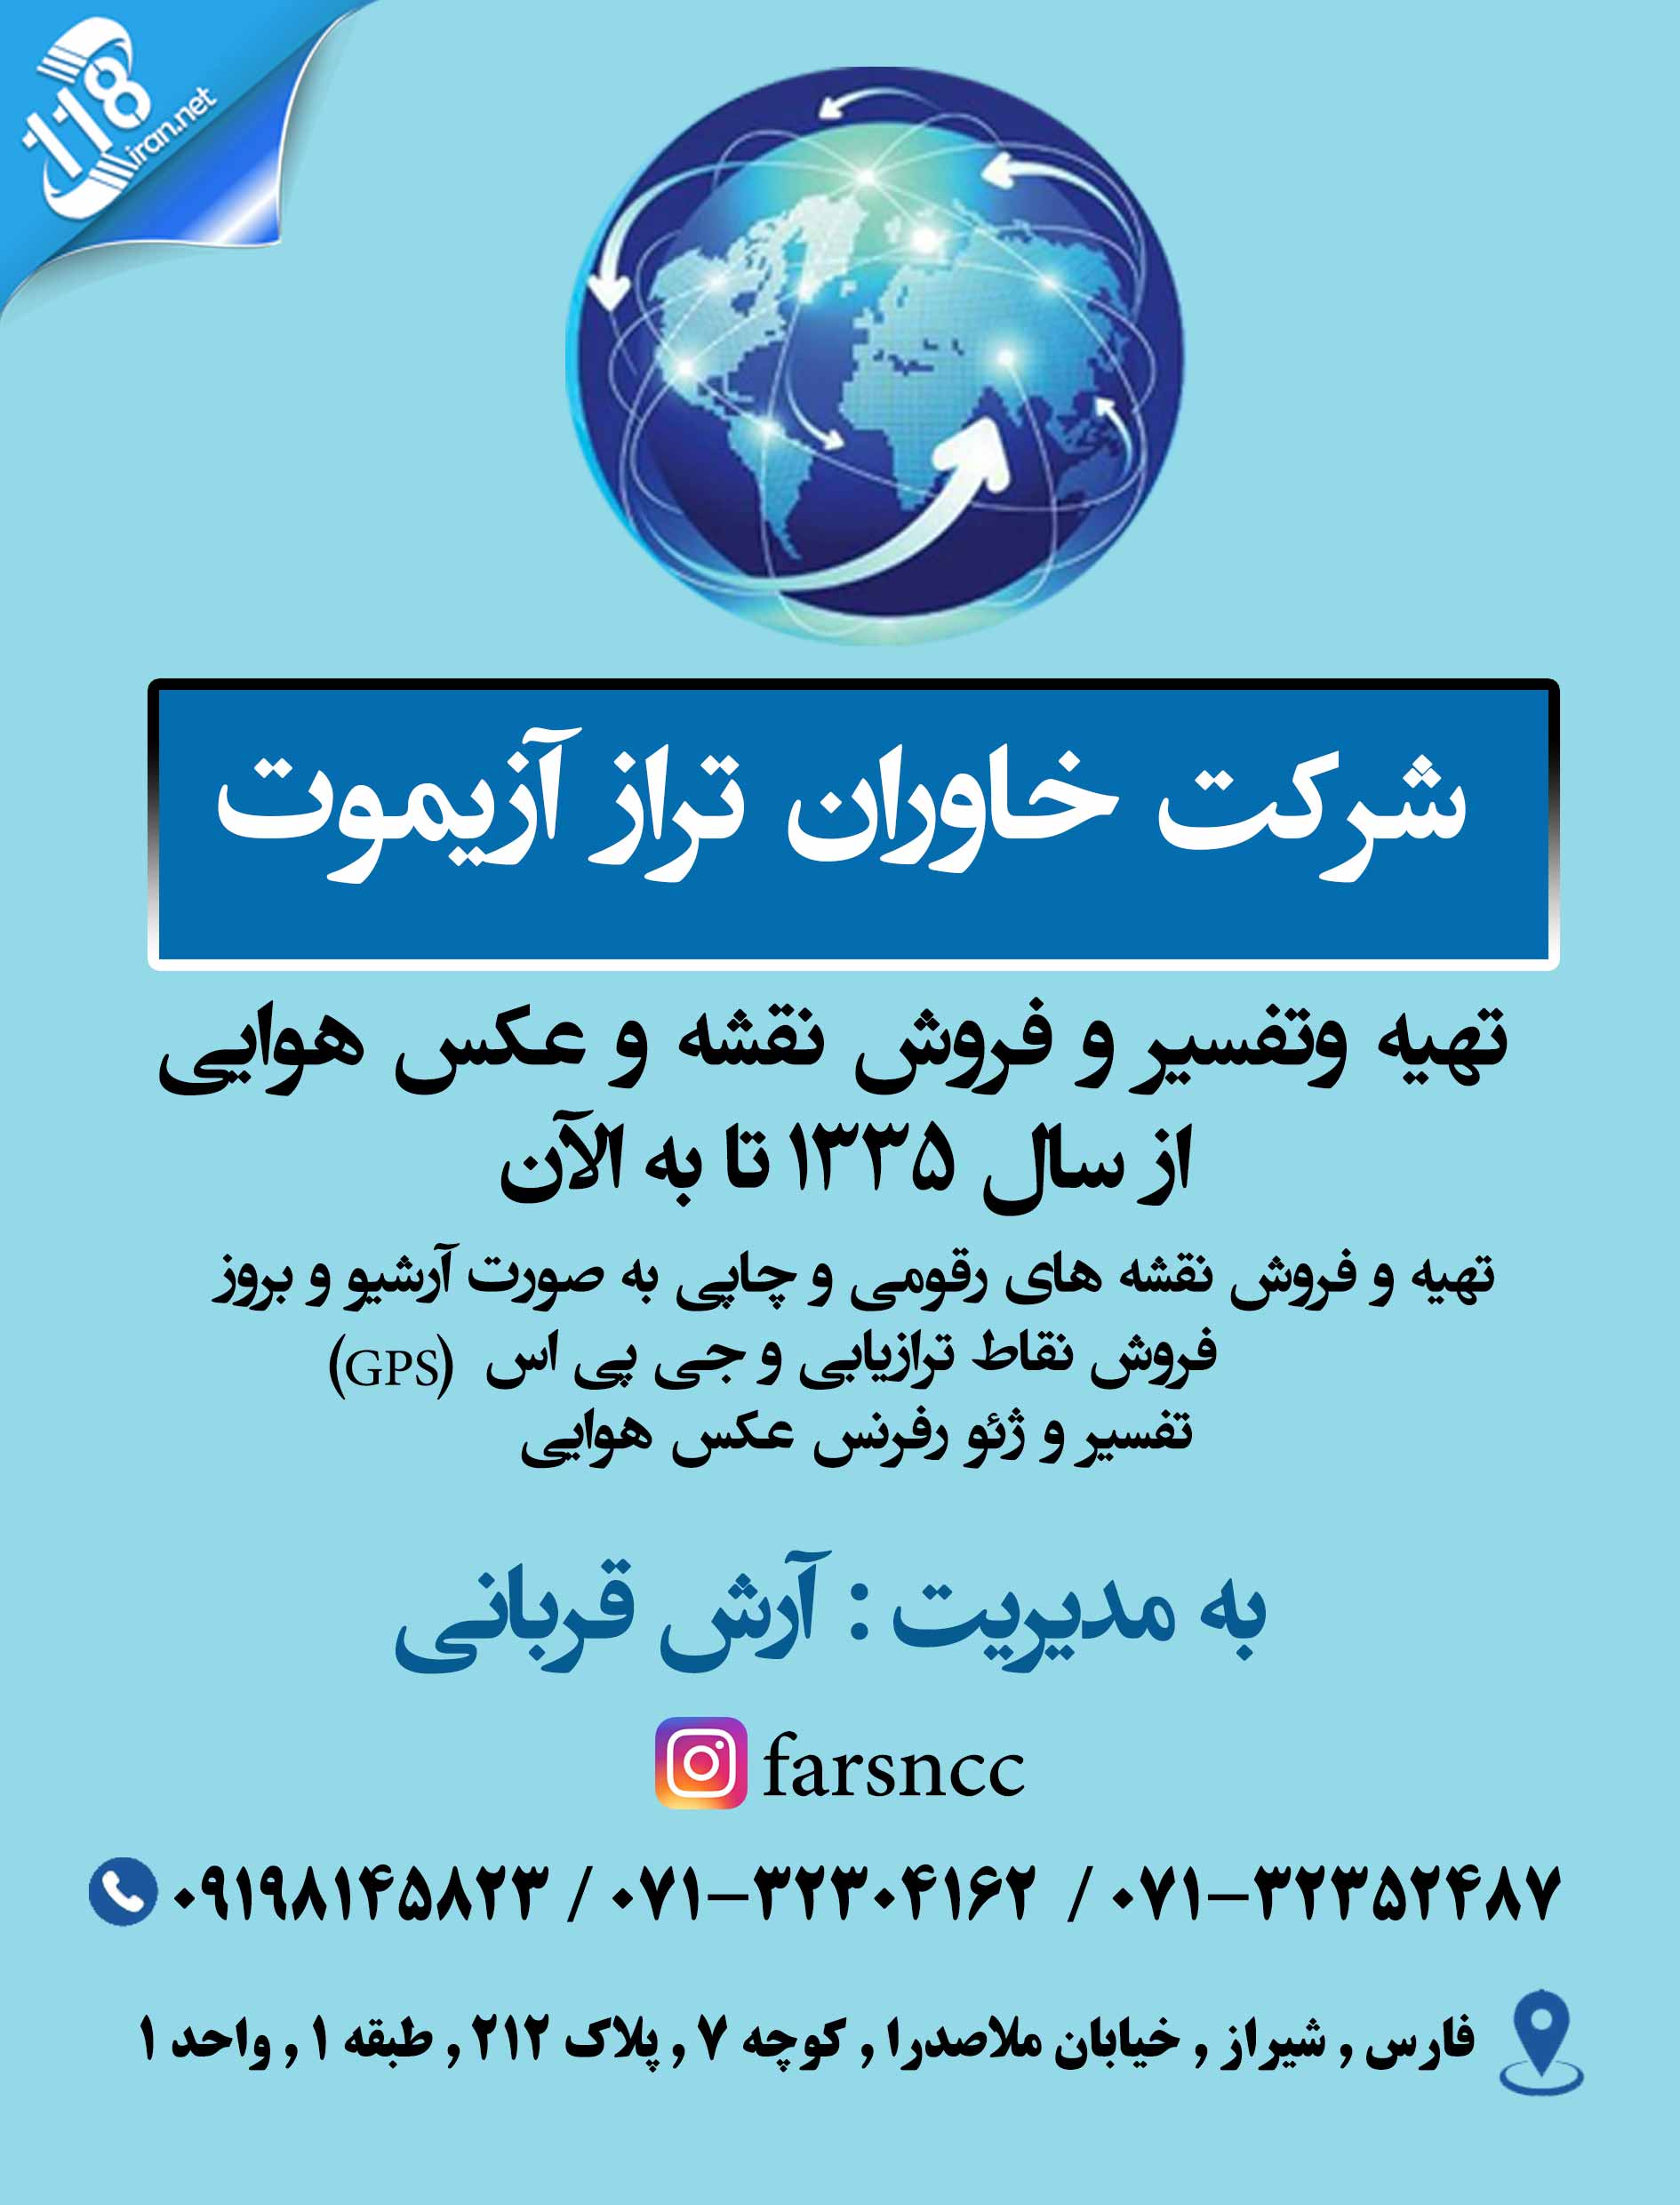  تهیه و فروش نقشه و عکس هوایی (ژئورفرنس) در شیراز 